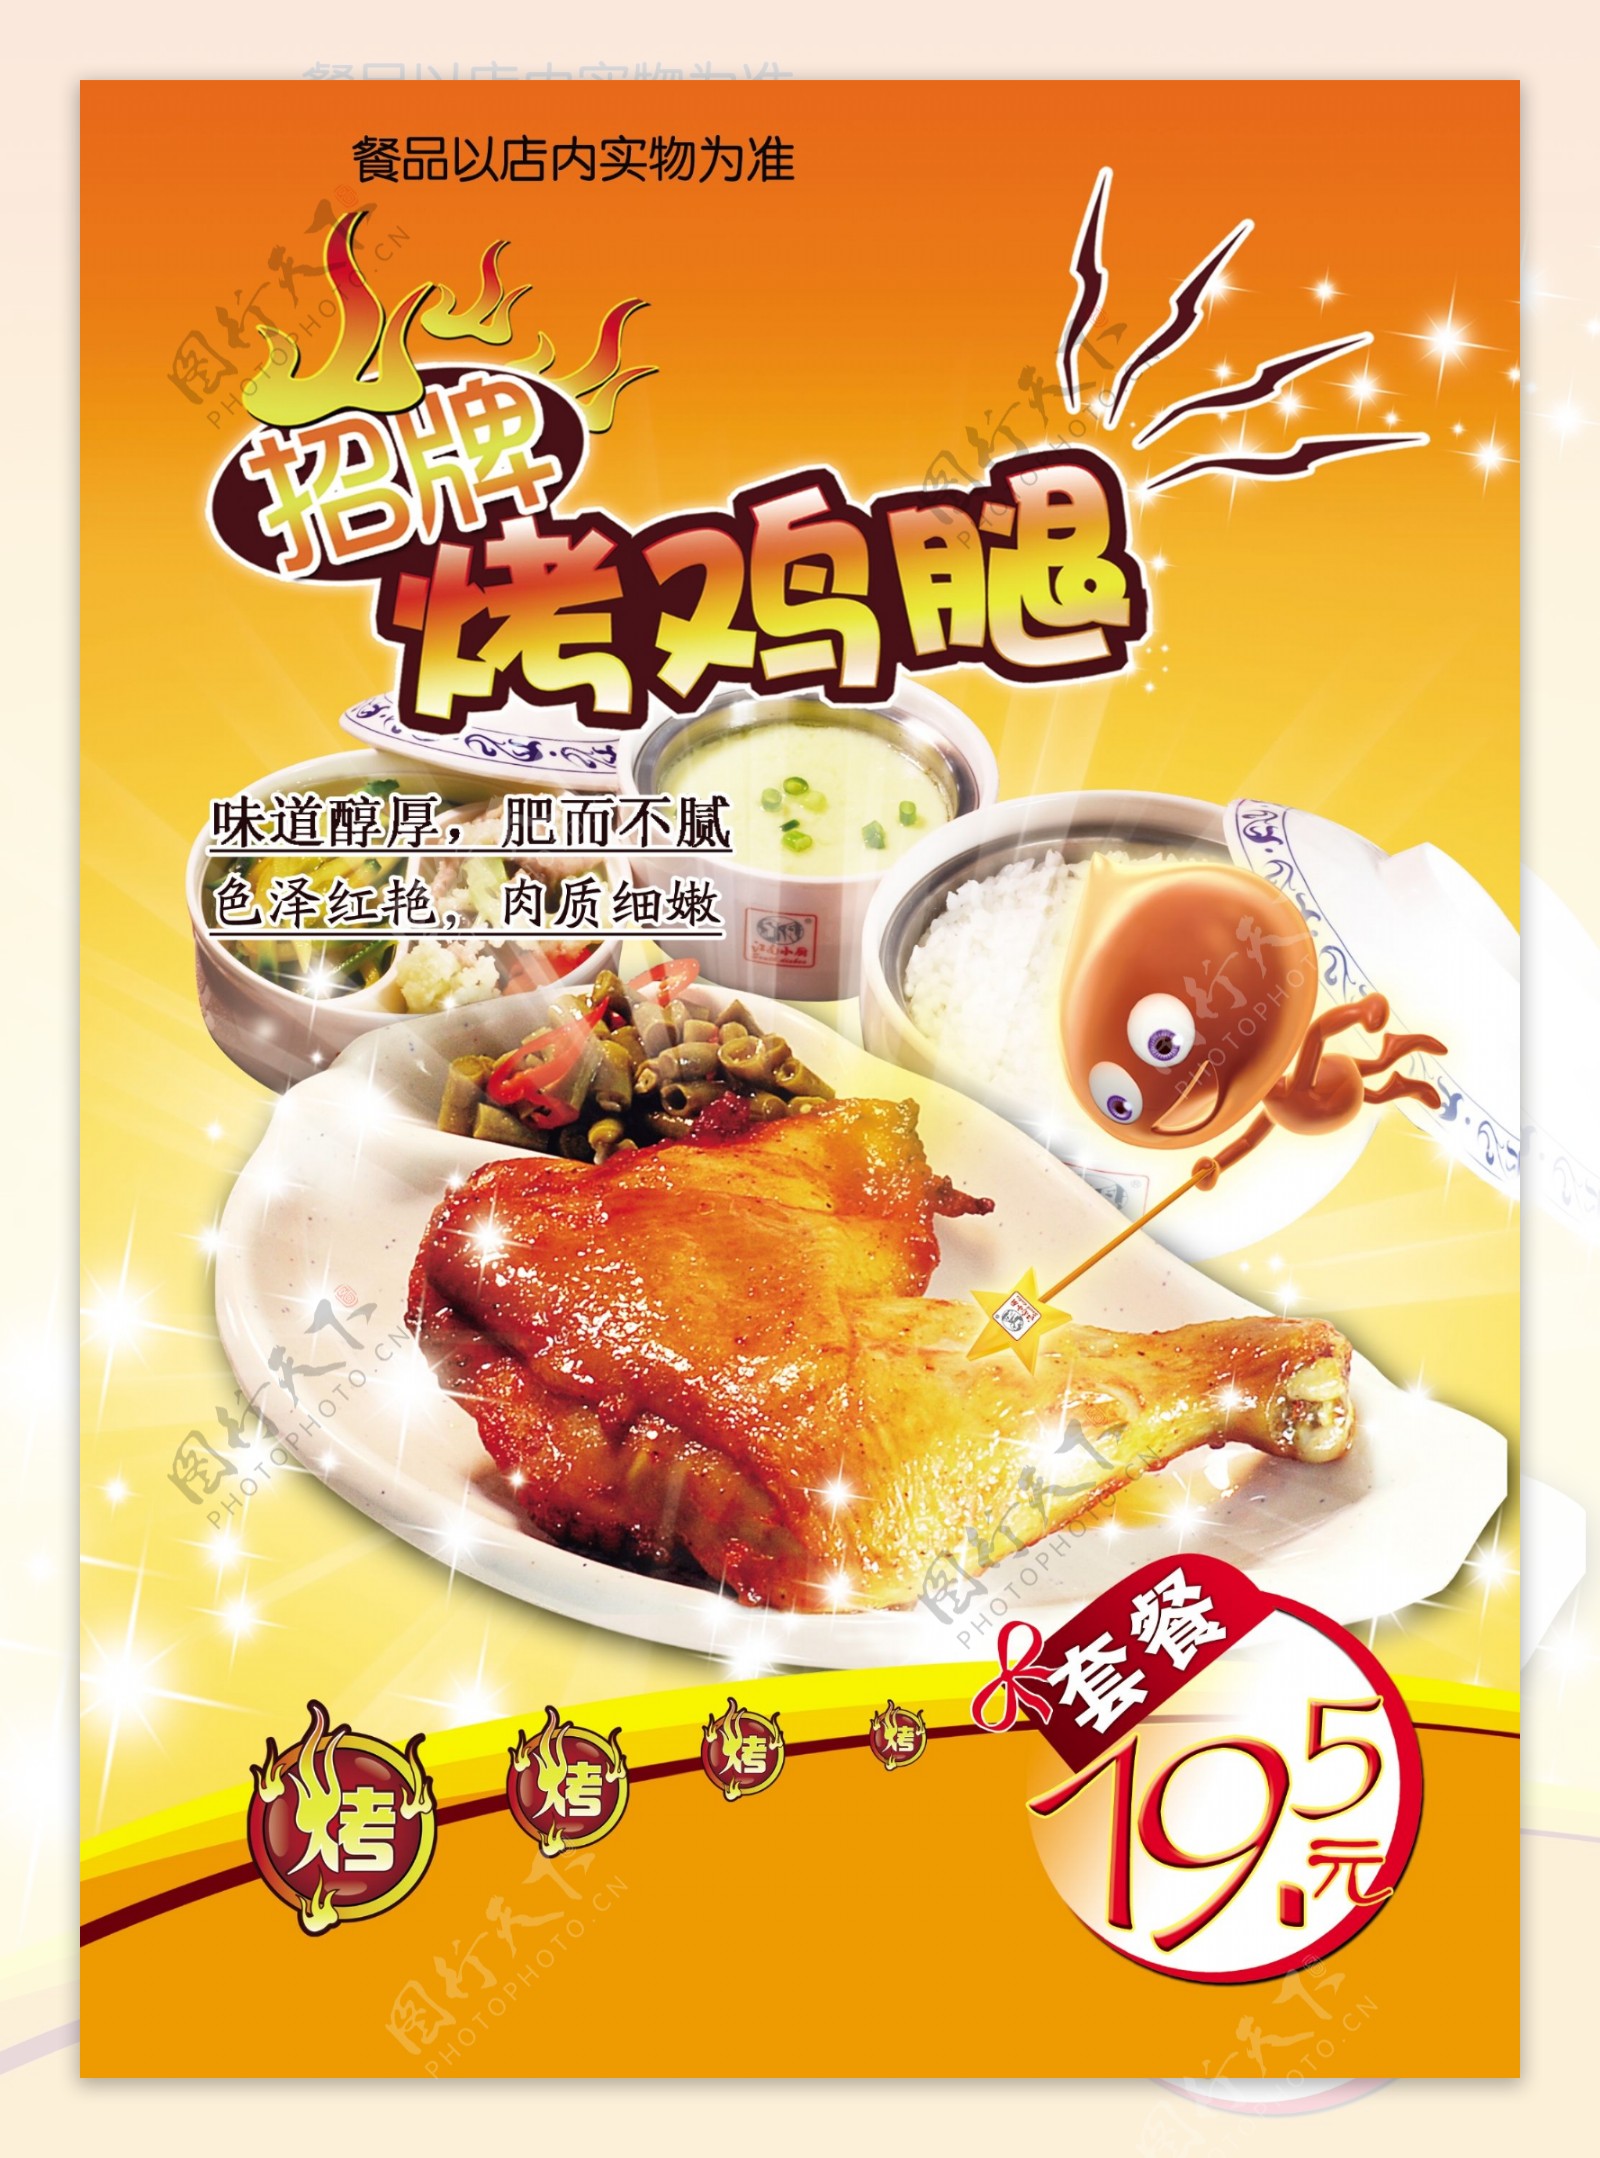 鸡腿餐品海报图片